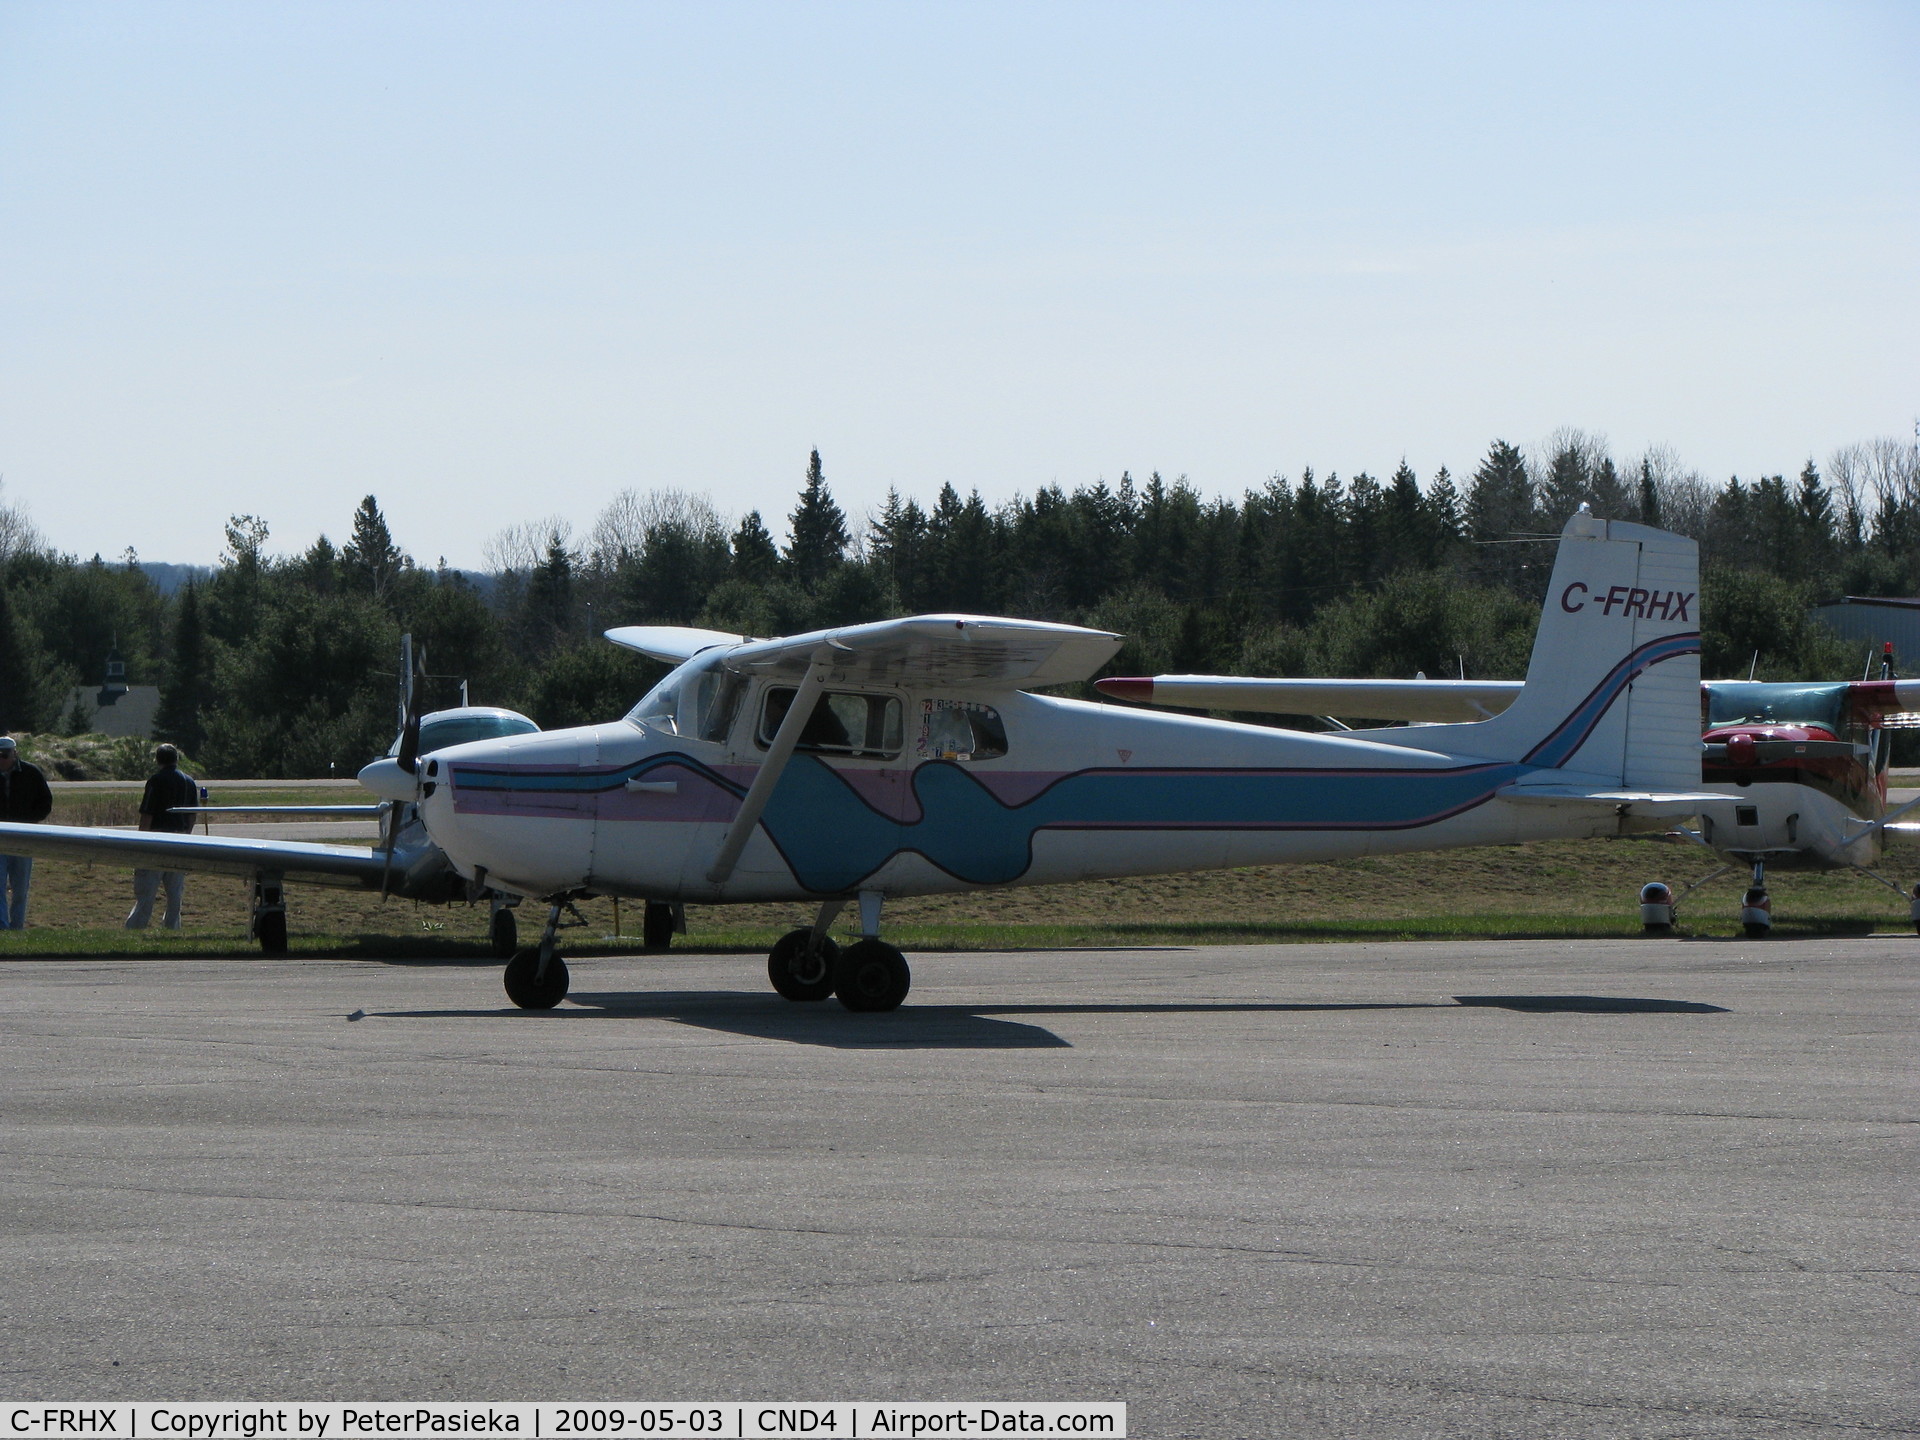 C-FRHX, 1958 Cessna 172 C/N 36597, @ Haliburton/Stahnope Airport